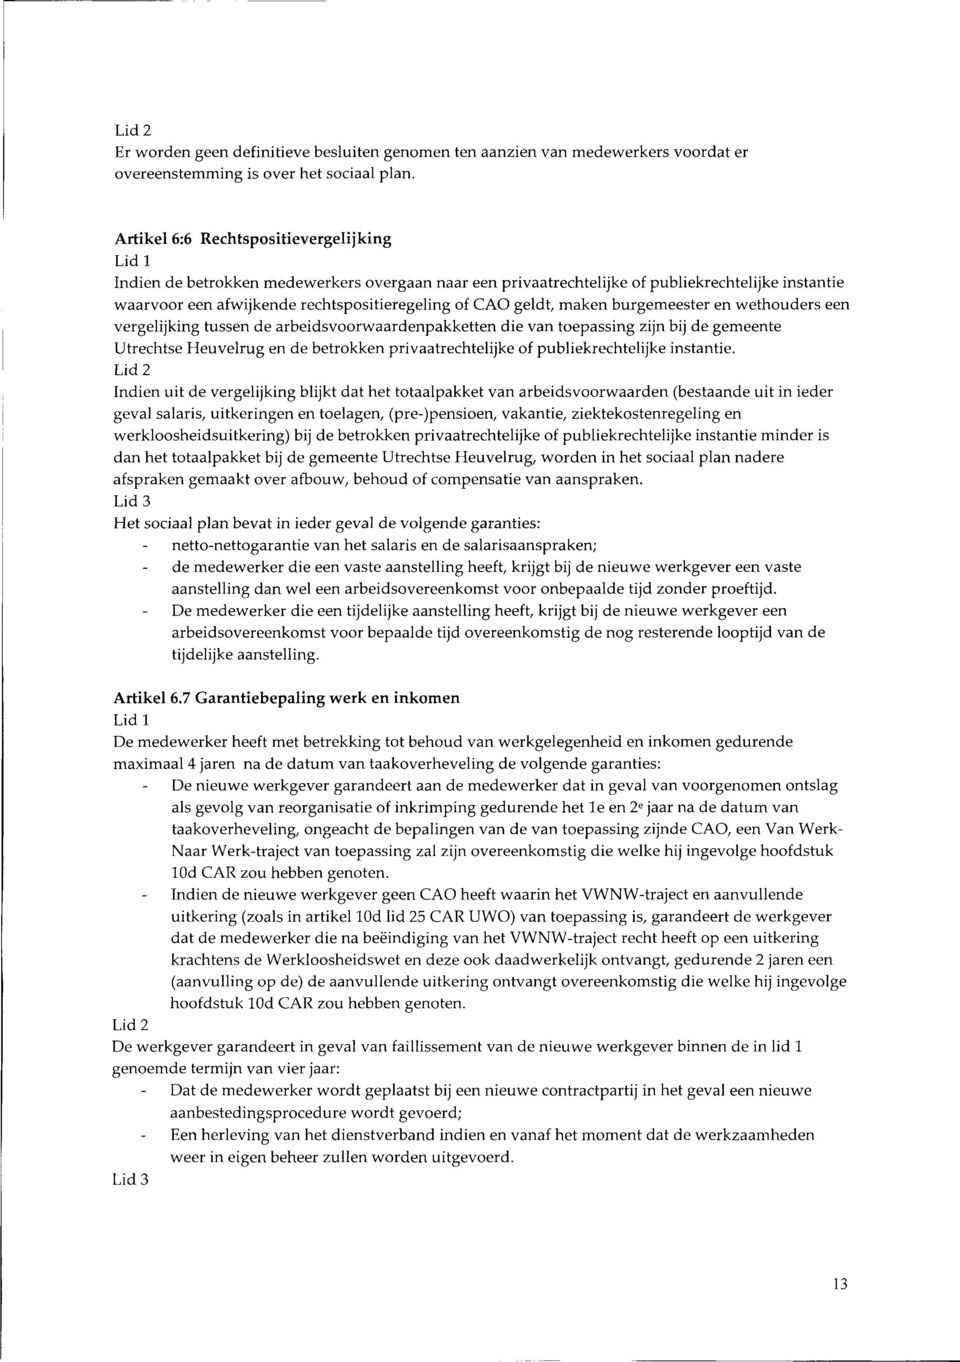 maken burgemeester en wethouders een vergelijking tussen de arbeidsvoorwaardenpakketten die van toepassing zijn bij de gemeente Utrechtse Heuvelrug en de betrokken privaatrechtelijke of